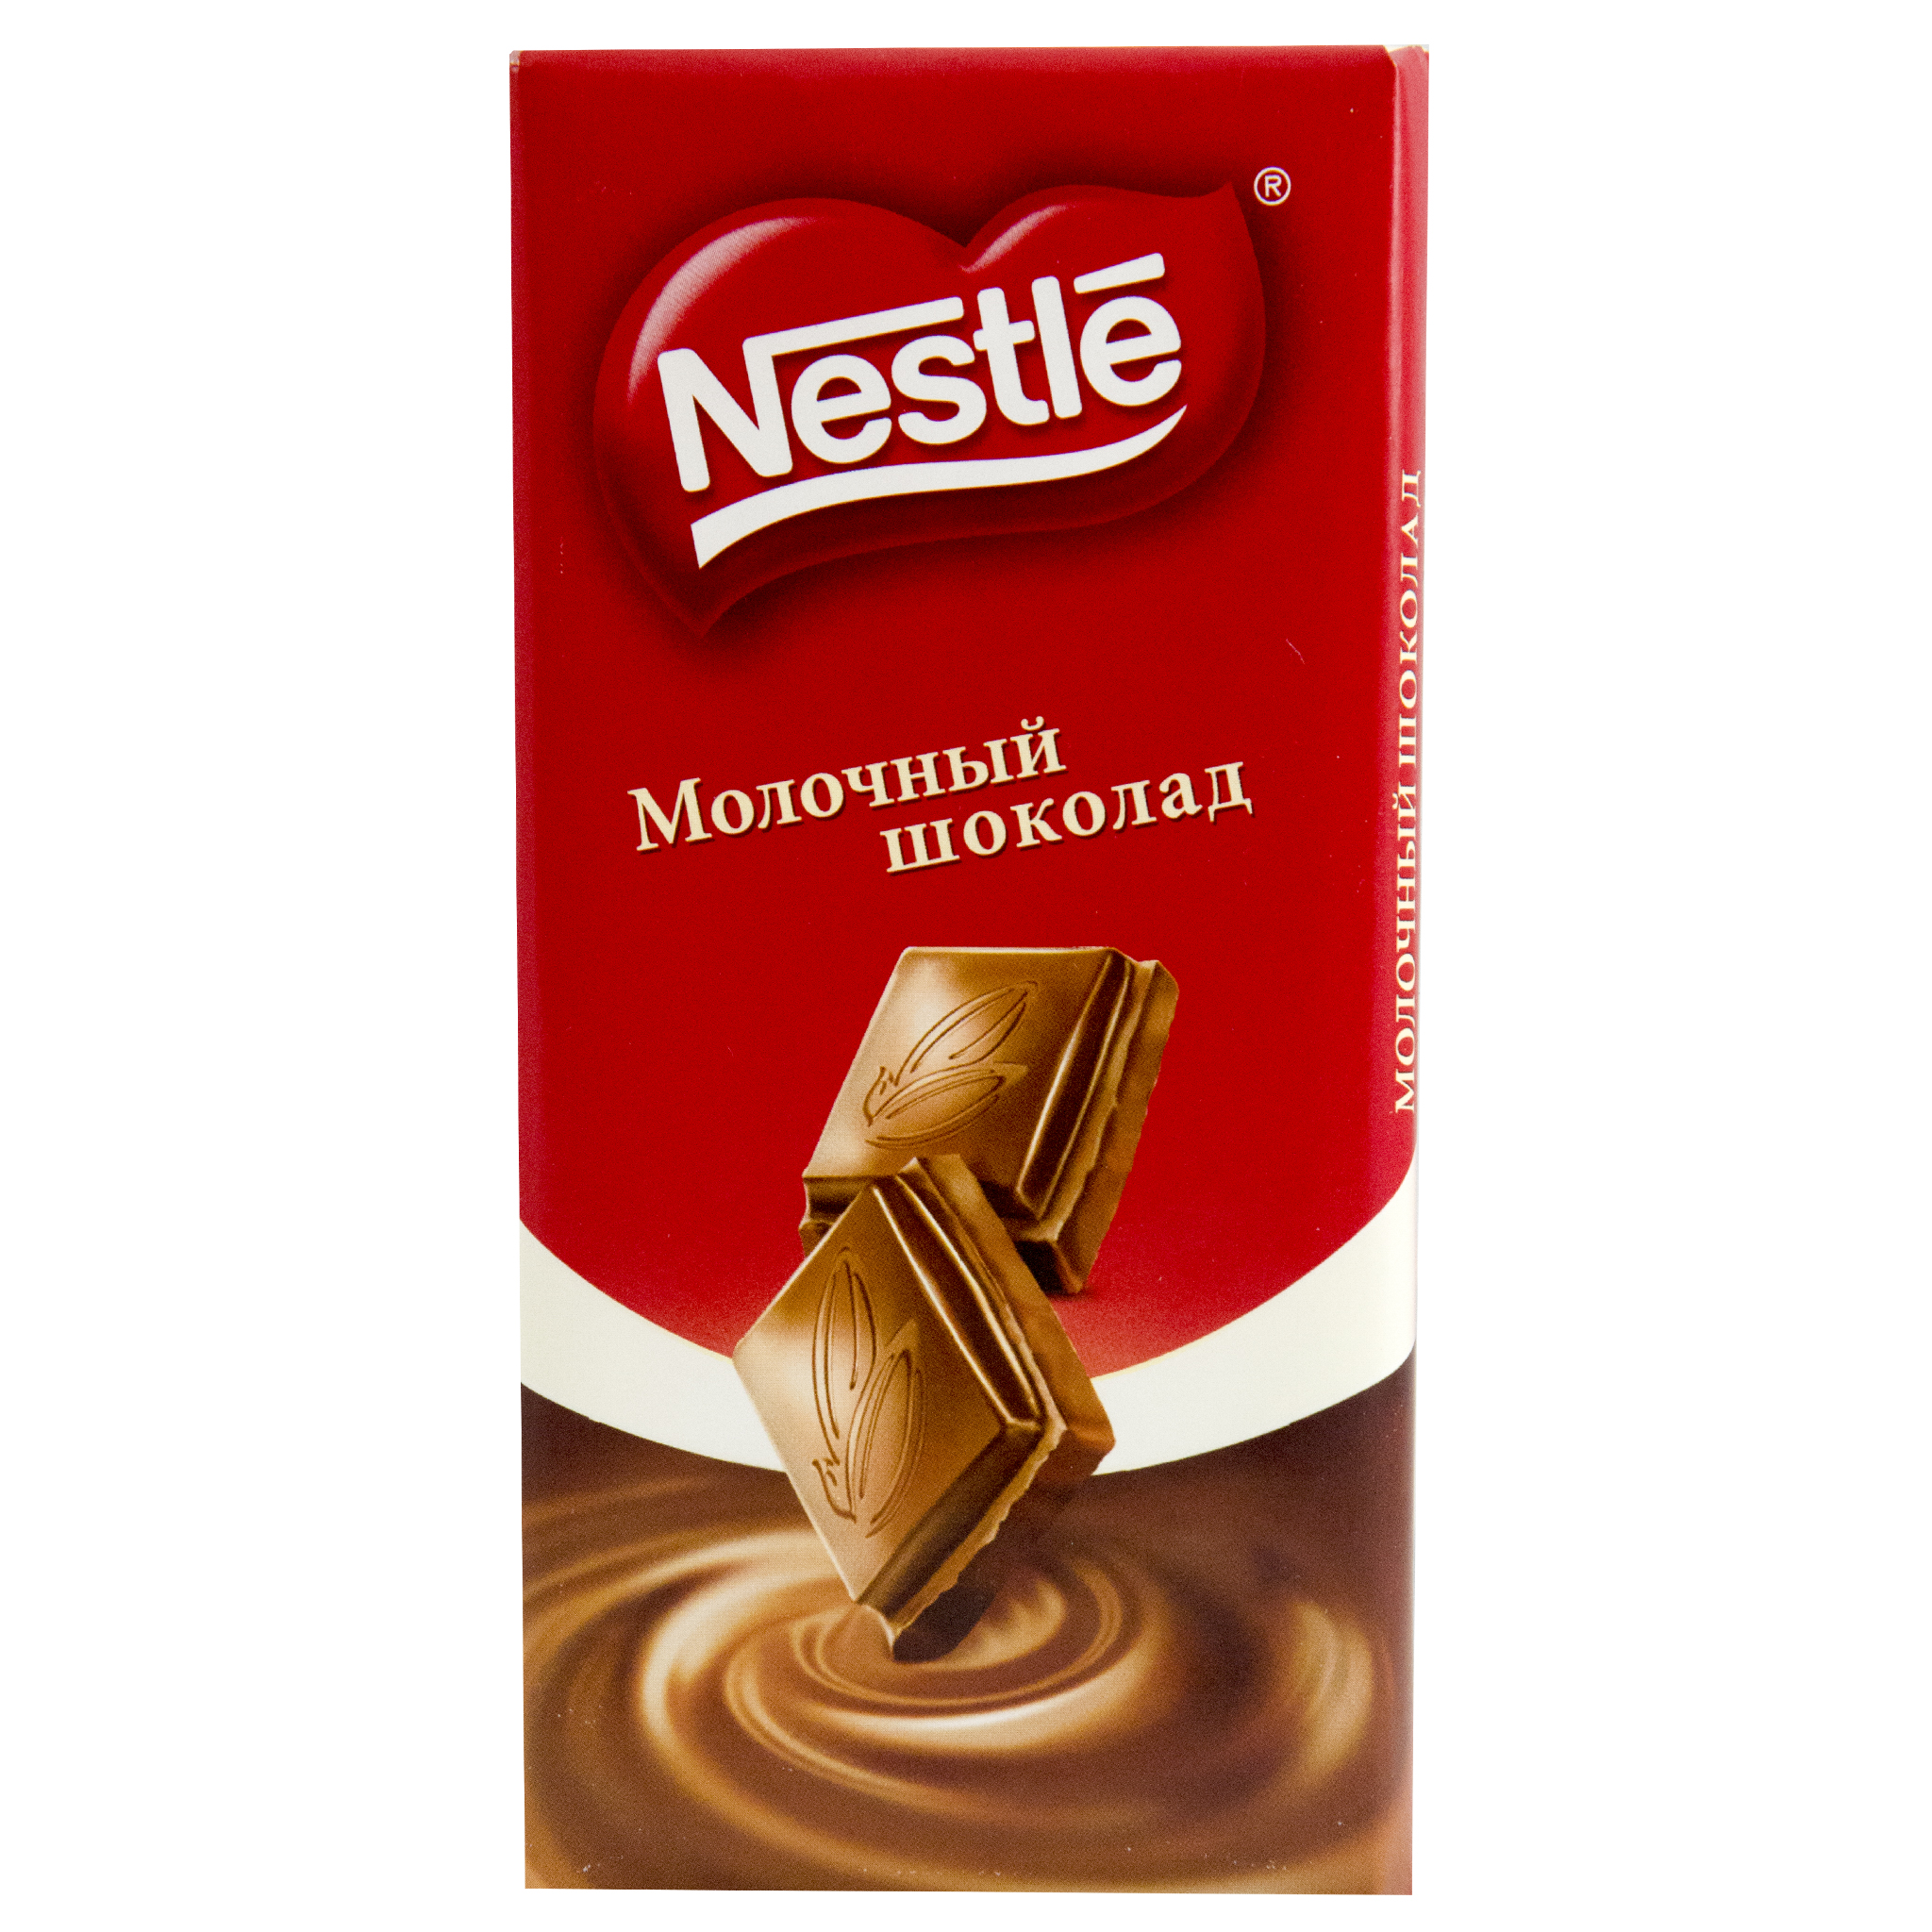 Шоколадки берите. Шоколад Нестле молочный 90г. Шоколадная плитка молочная Nestle (90гр). Шоколад Nestlé молочный, 90 г. Nestle шоколад молочный 82 гр.